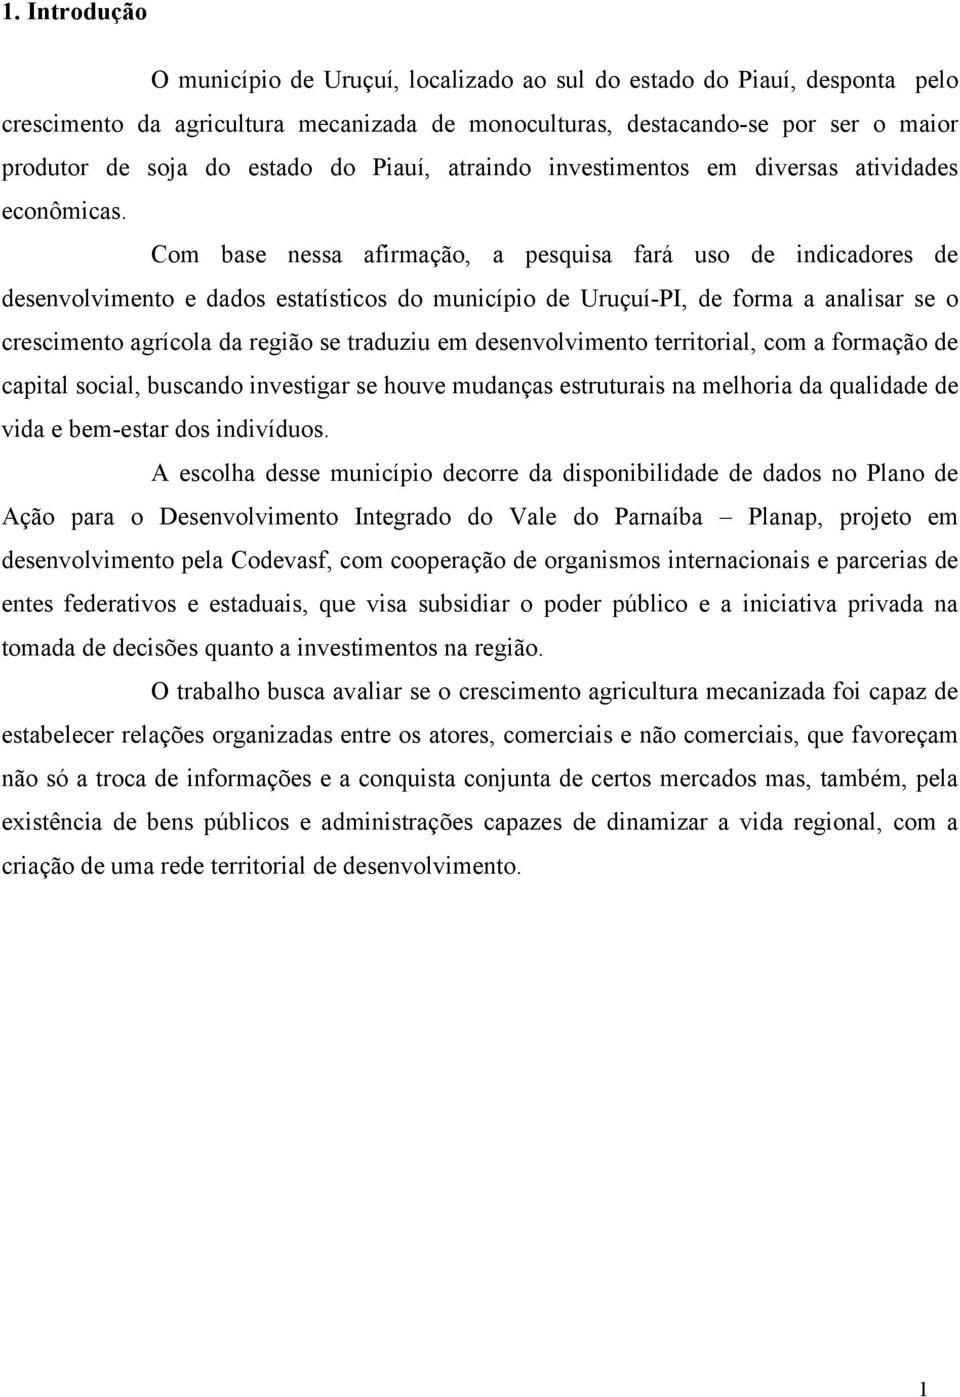 Com base nessa afirmação, a pesquisa fará uso de indicadores de desenvolvimento e dados estatísticos do município de Uruçuí-PI, de forma a analisar se o crescimento agrícola da região se traduziu em